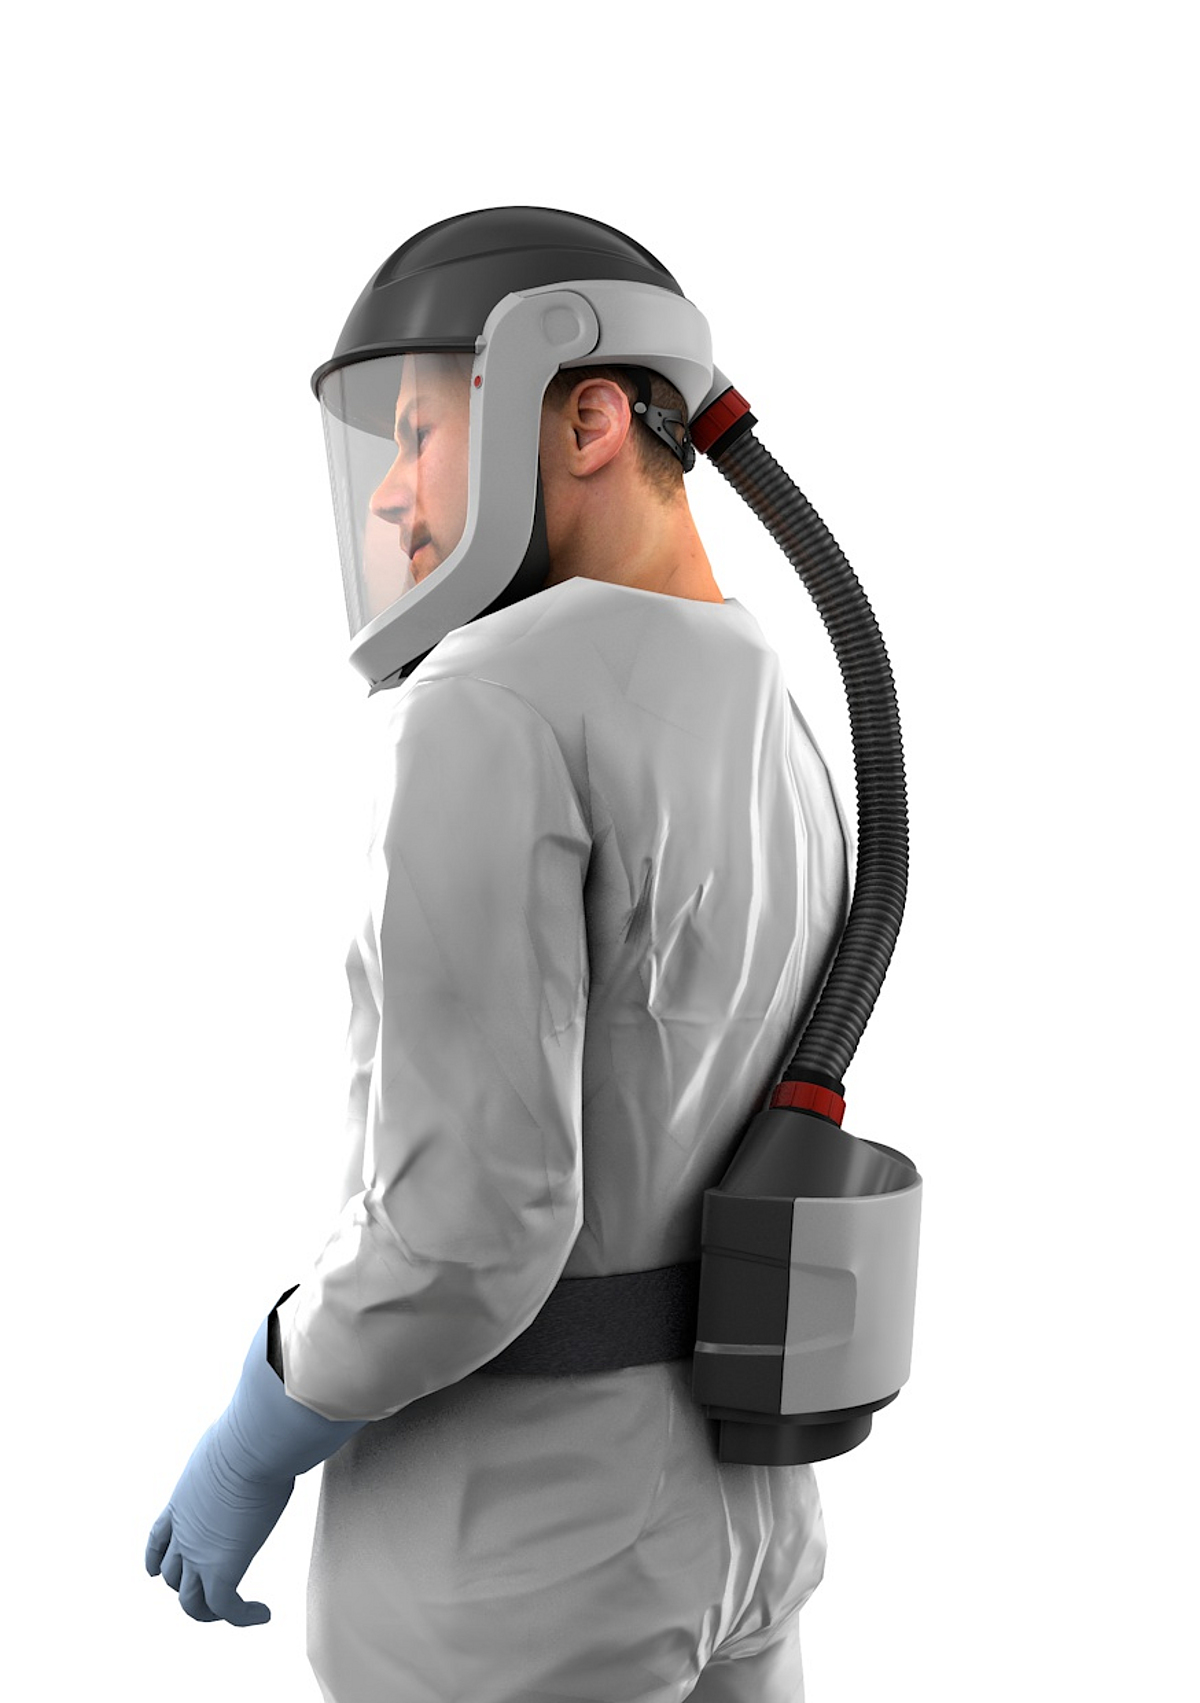 Eine Person trägt einen grauen Anzug und einem gebläseunterstützten Filtergeräte mit Schutzhelm. Dieser bietet als Persönliche Schutzausrüstung einen hohen Schutz gegen mehrfache Gefährdungen.